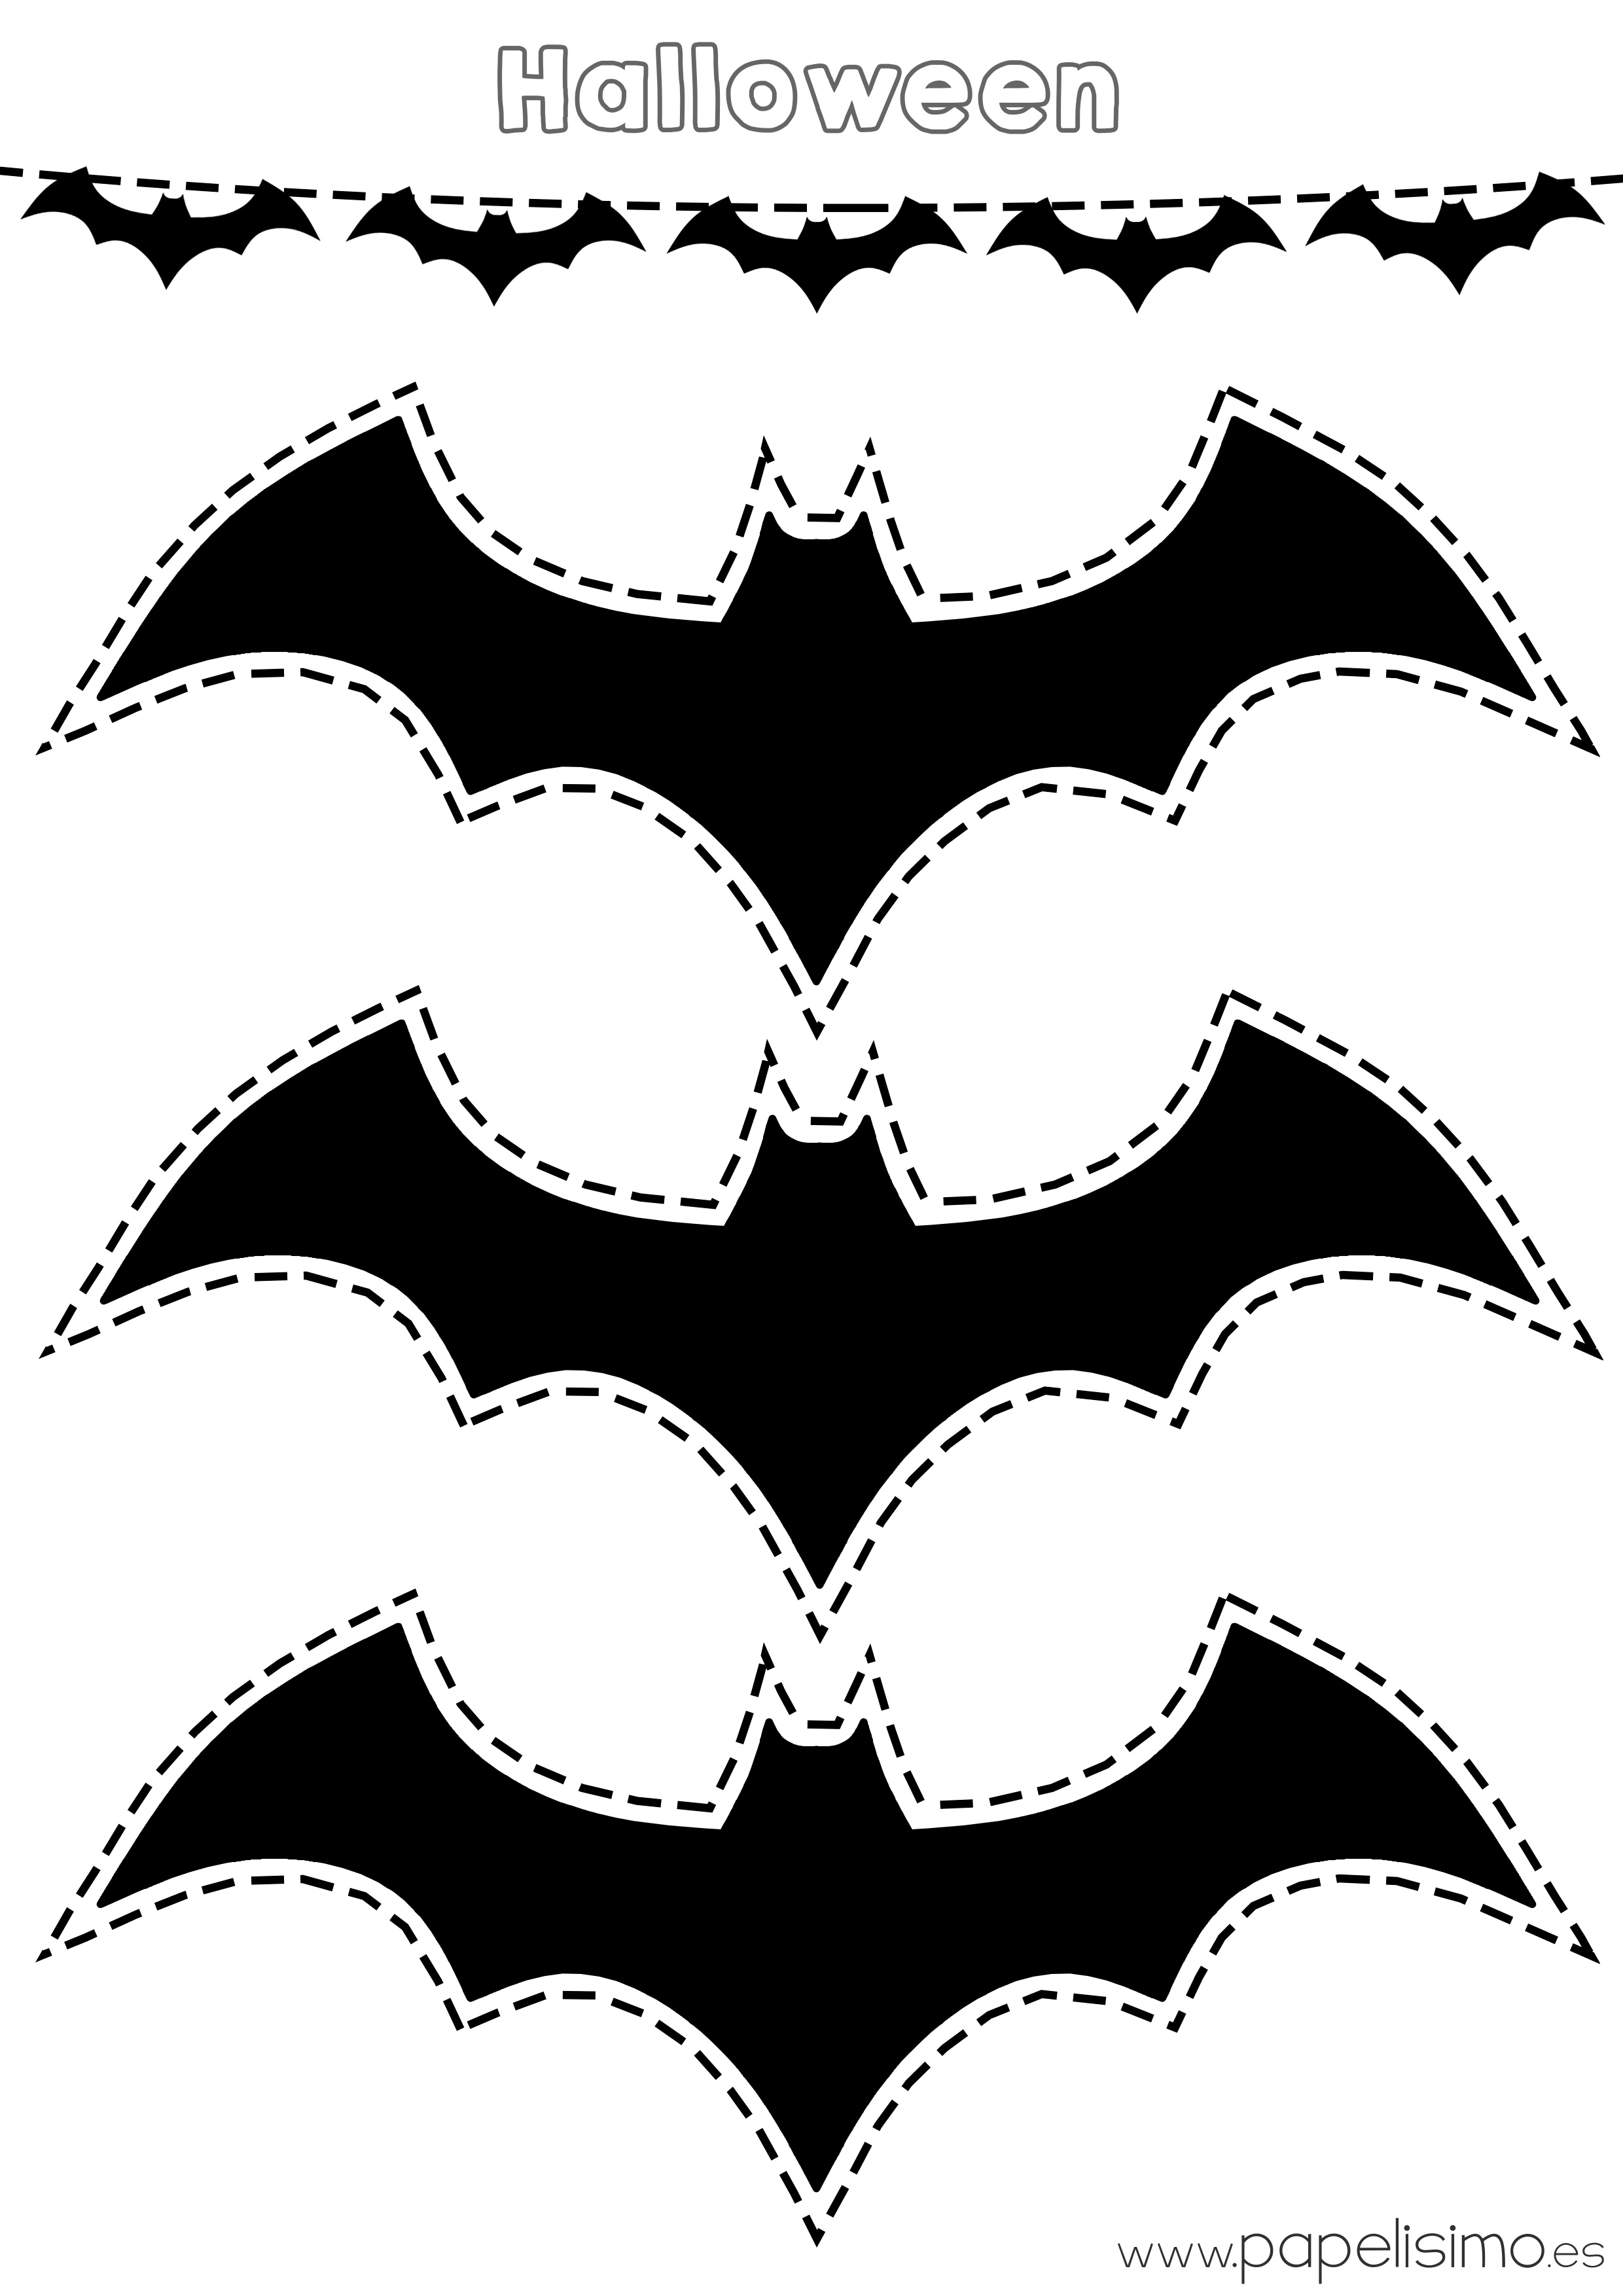 Siluetas de murciélagos para colorear y recortar | Papelisimo